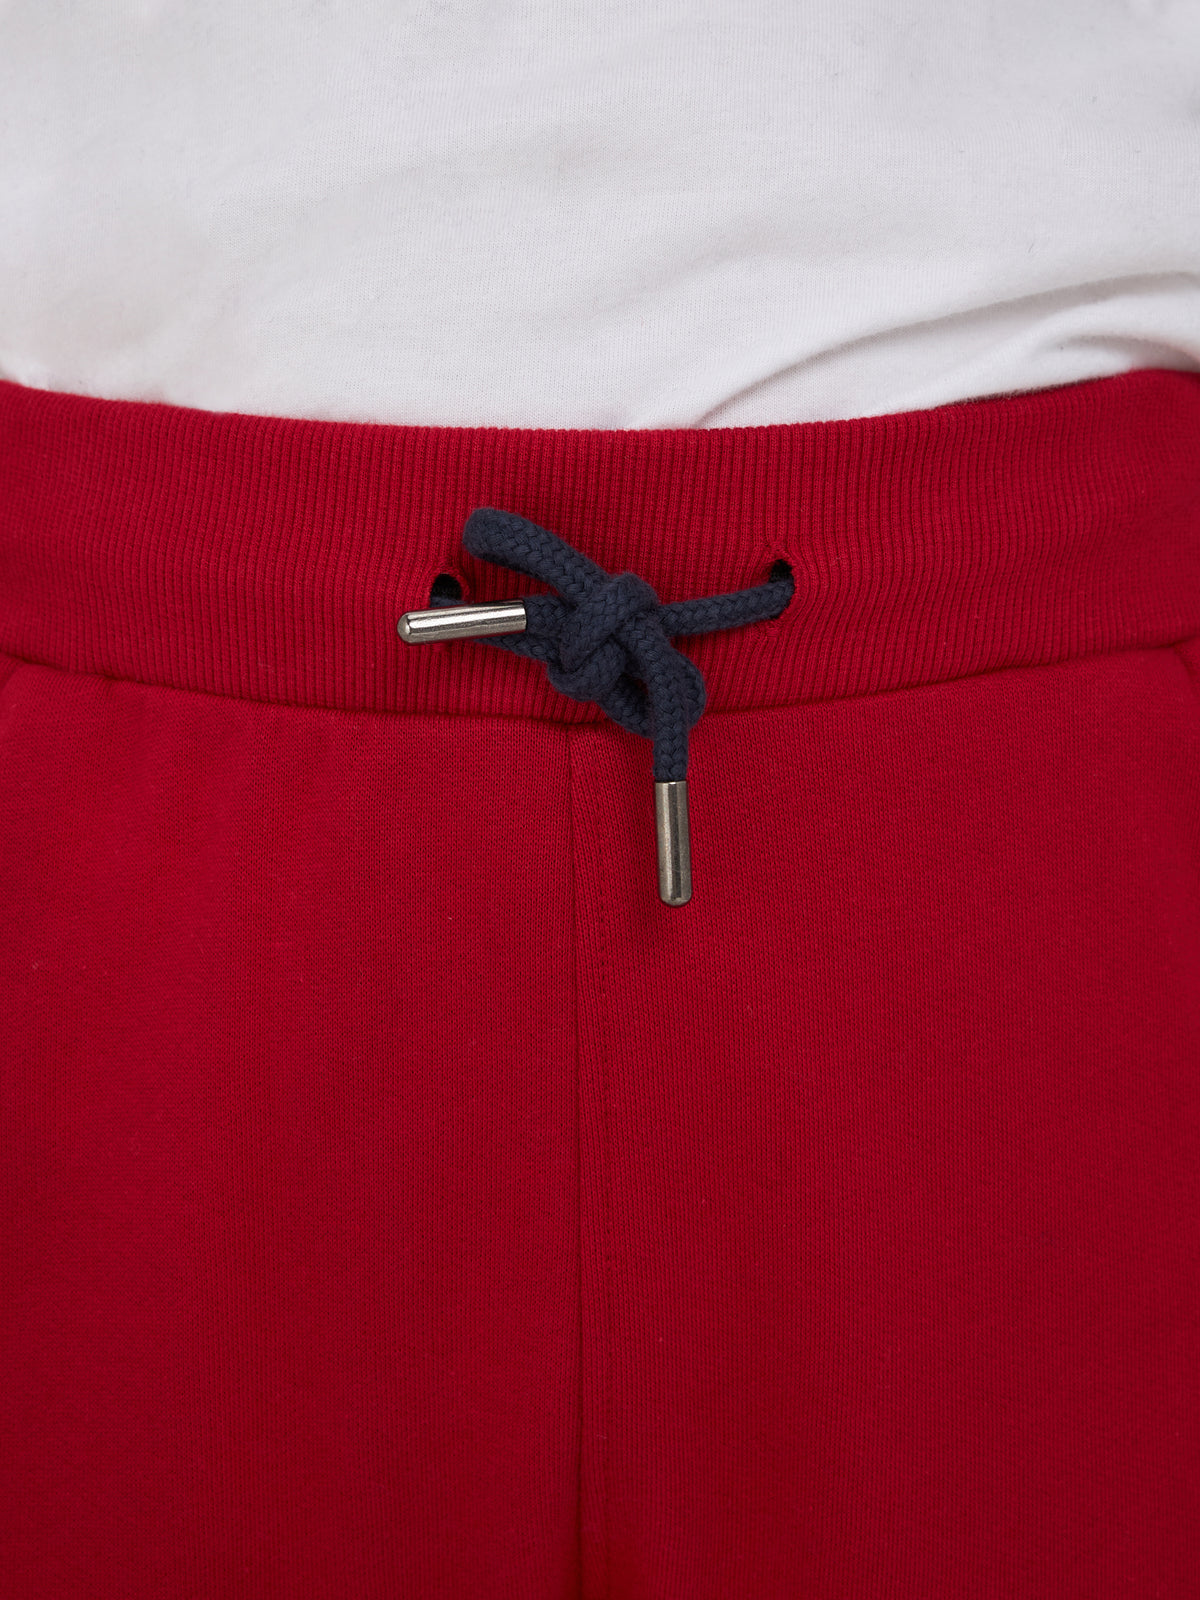 Classic Cuffed Sweatpant - Red